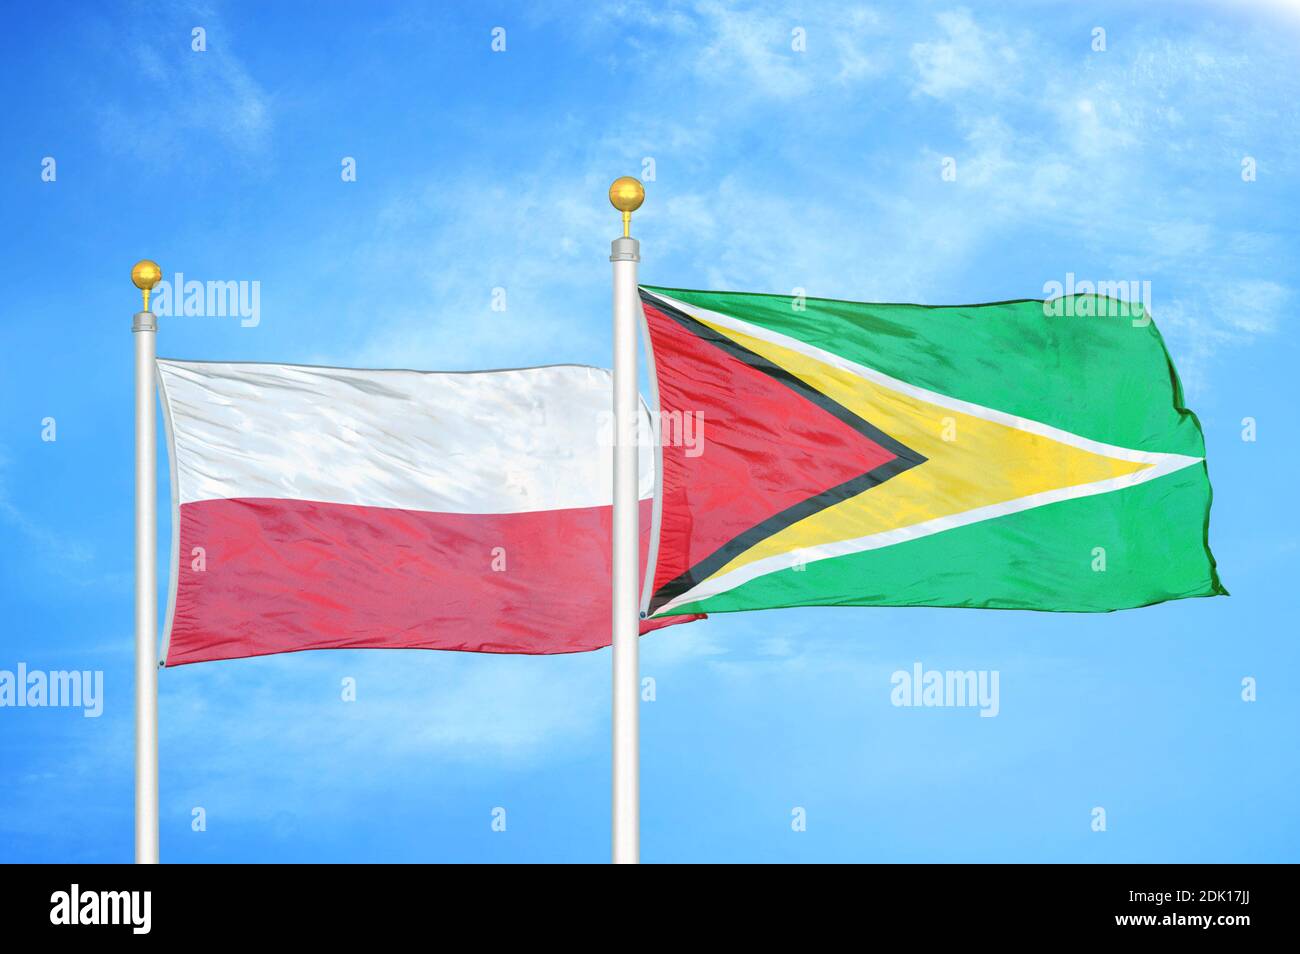 Polen und Guyana zwei Flaggen auf Fahnenmasten und blau bewölkt Himmel Stockfoto